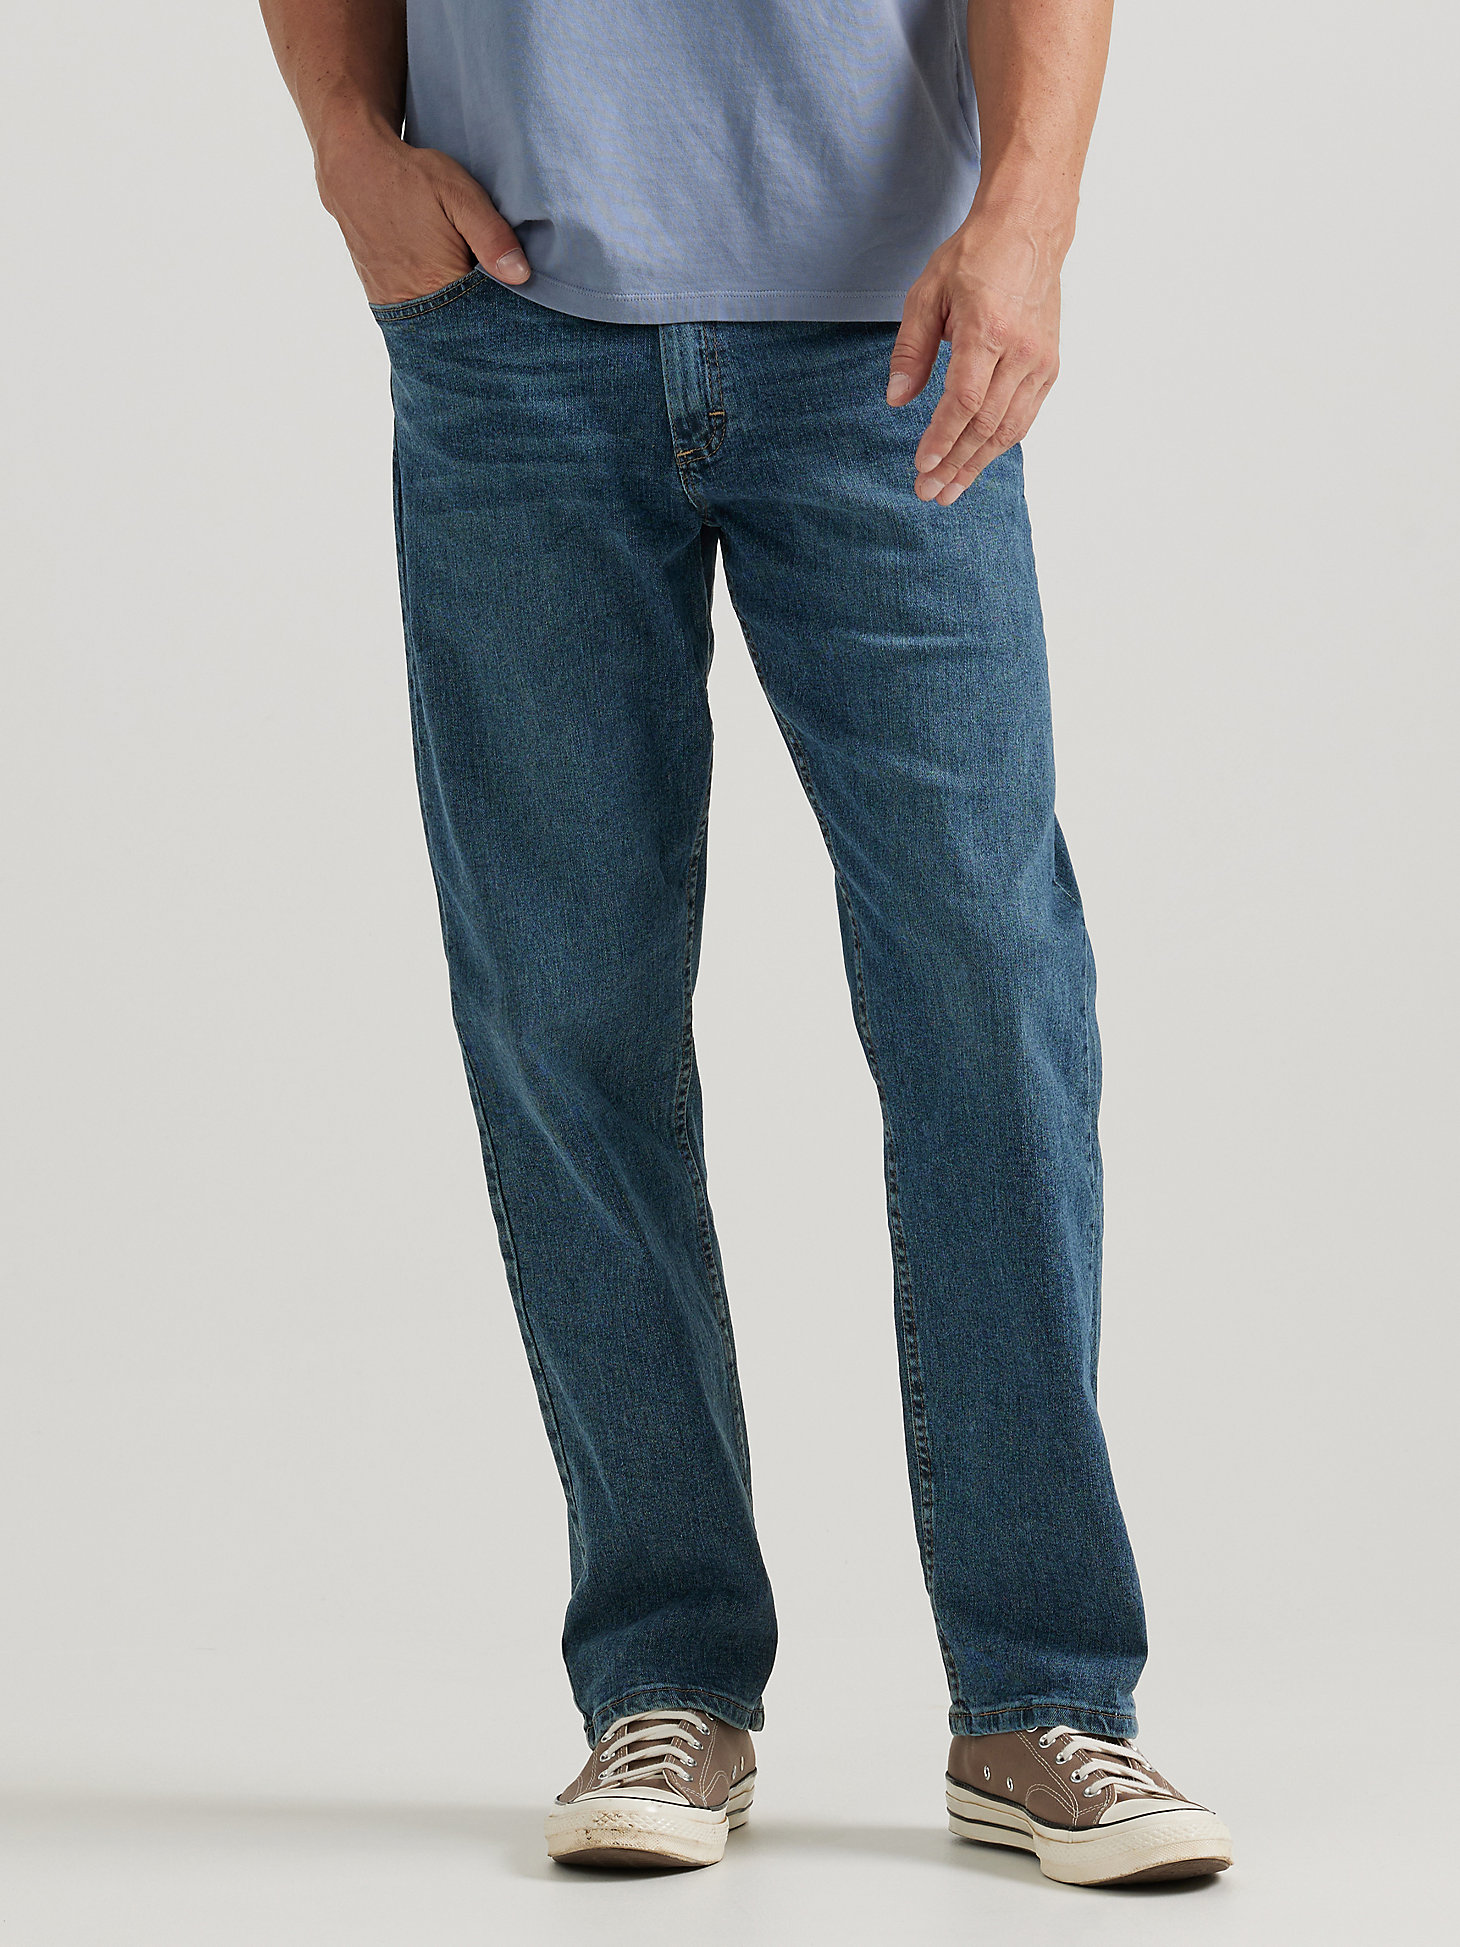 Mens Cotton Jeans Relaxed Fit Jean Pant Authentics Mens Classic Jeans Pants Trousers Blue 